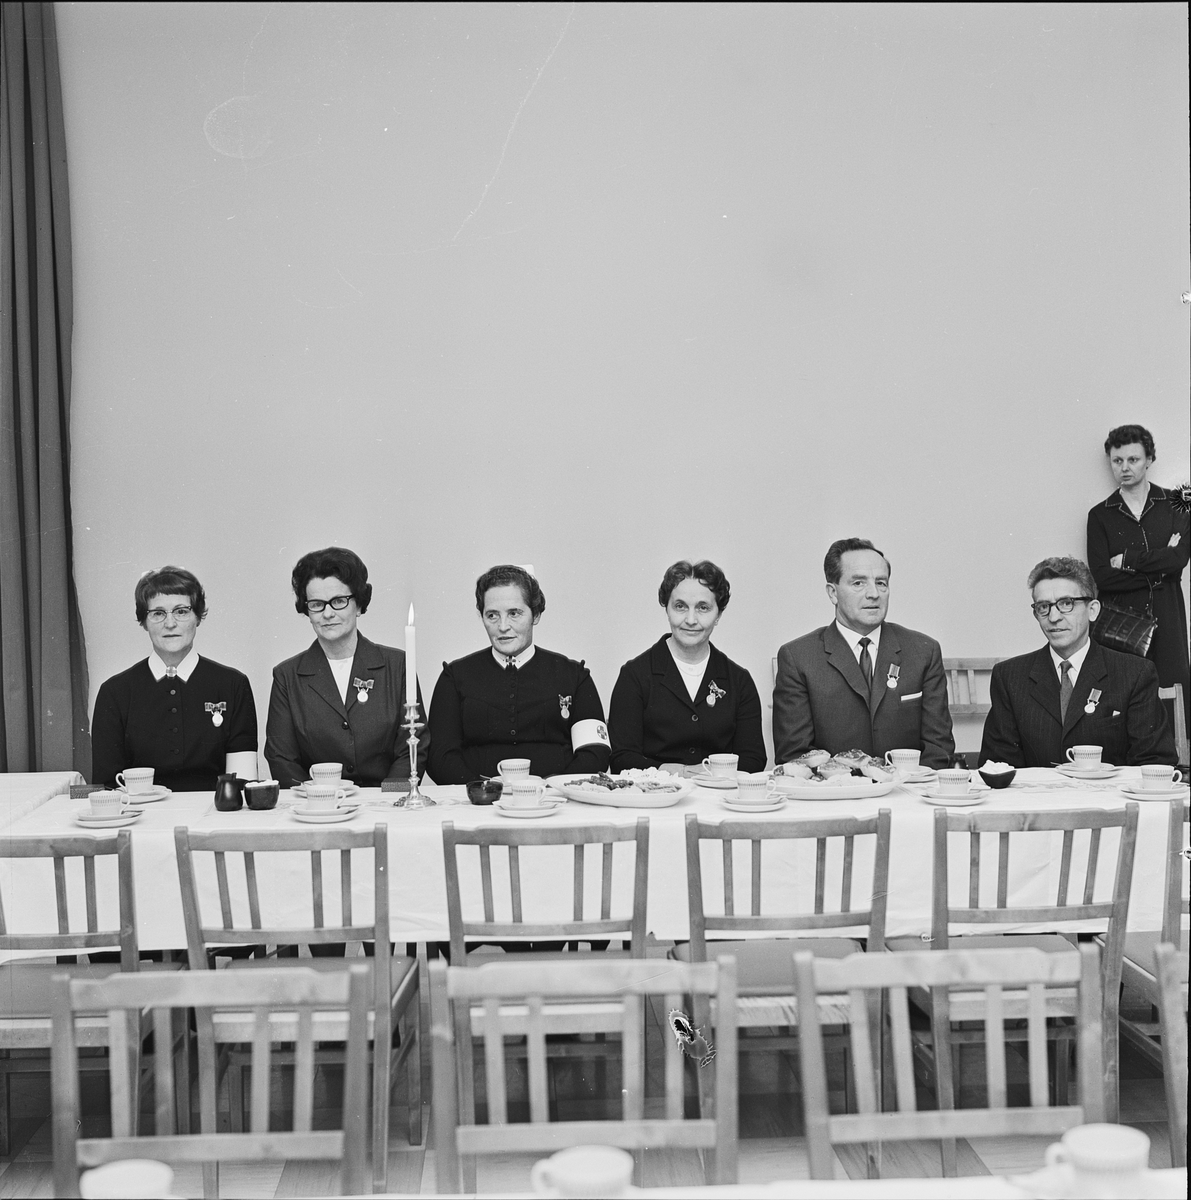 Sex personer medaljeras vid Ulleråker, Uppsala 1964